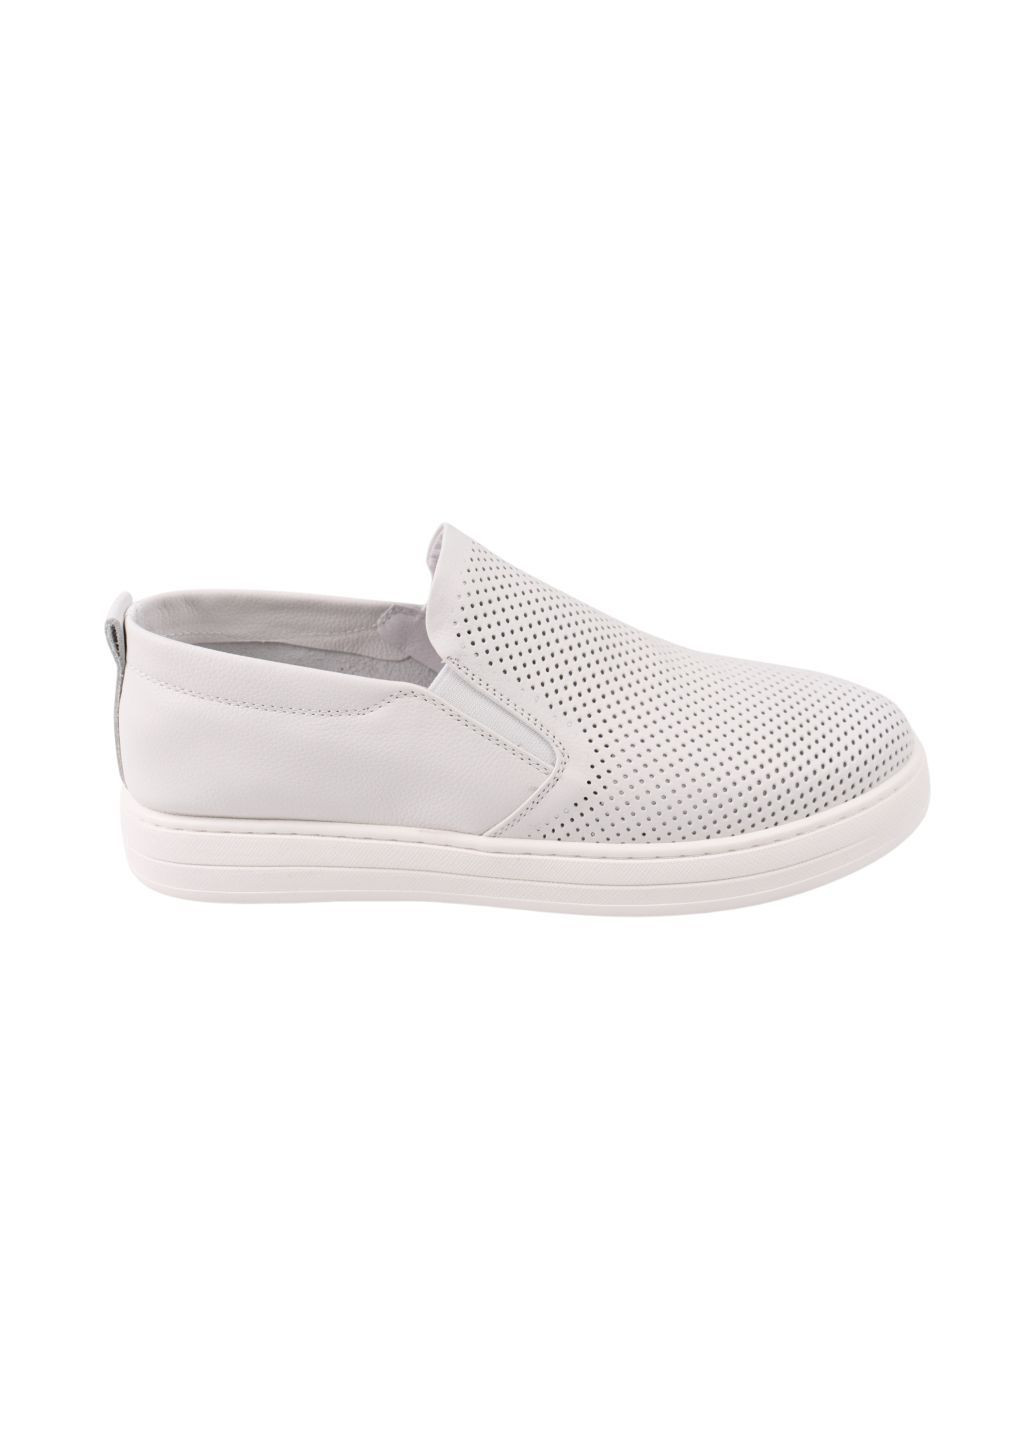 Белые туфли мужские белые натуральная кожа Lifexpert